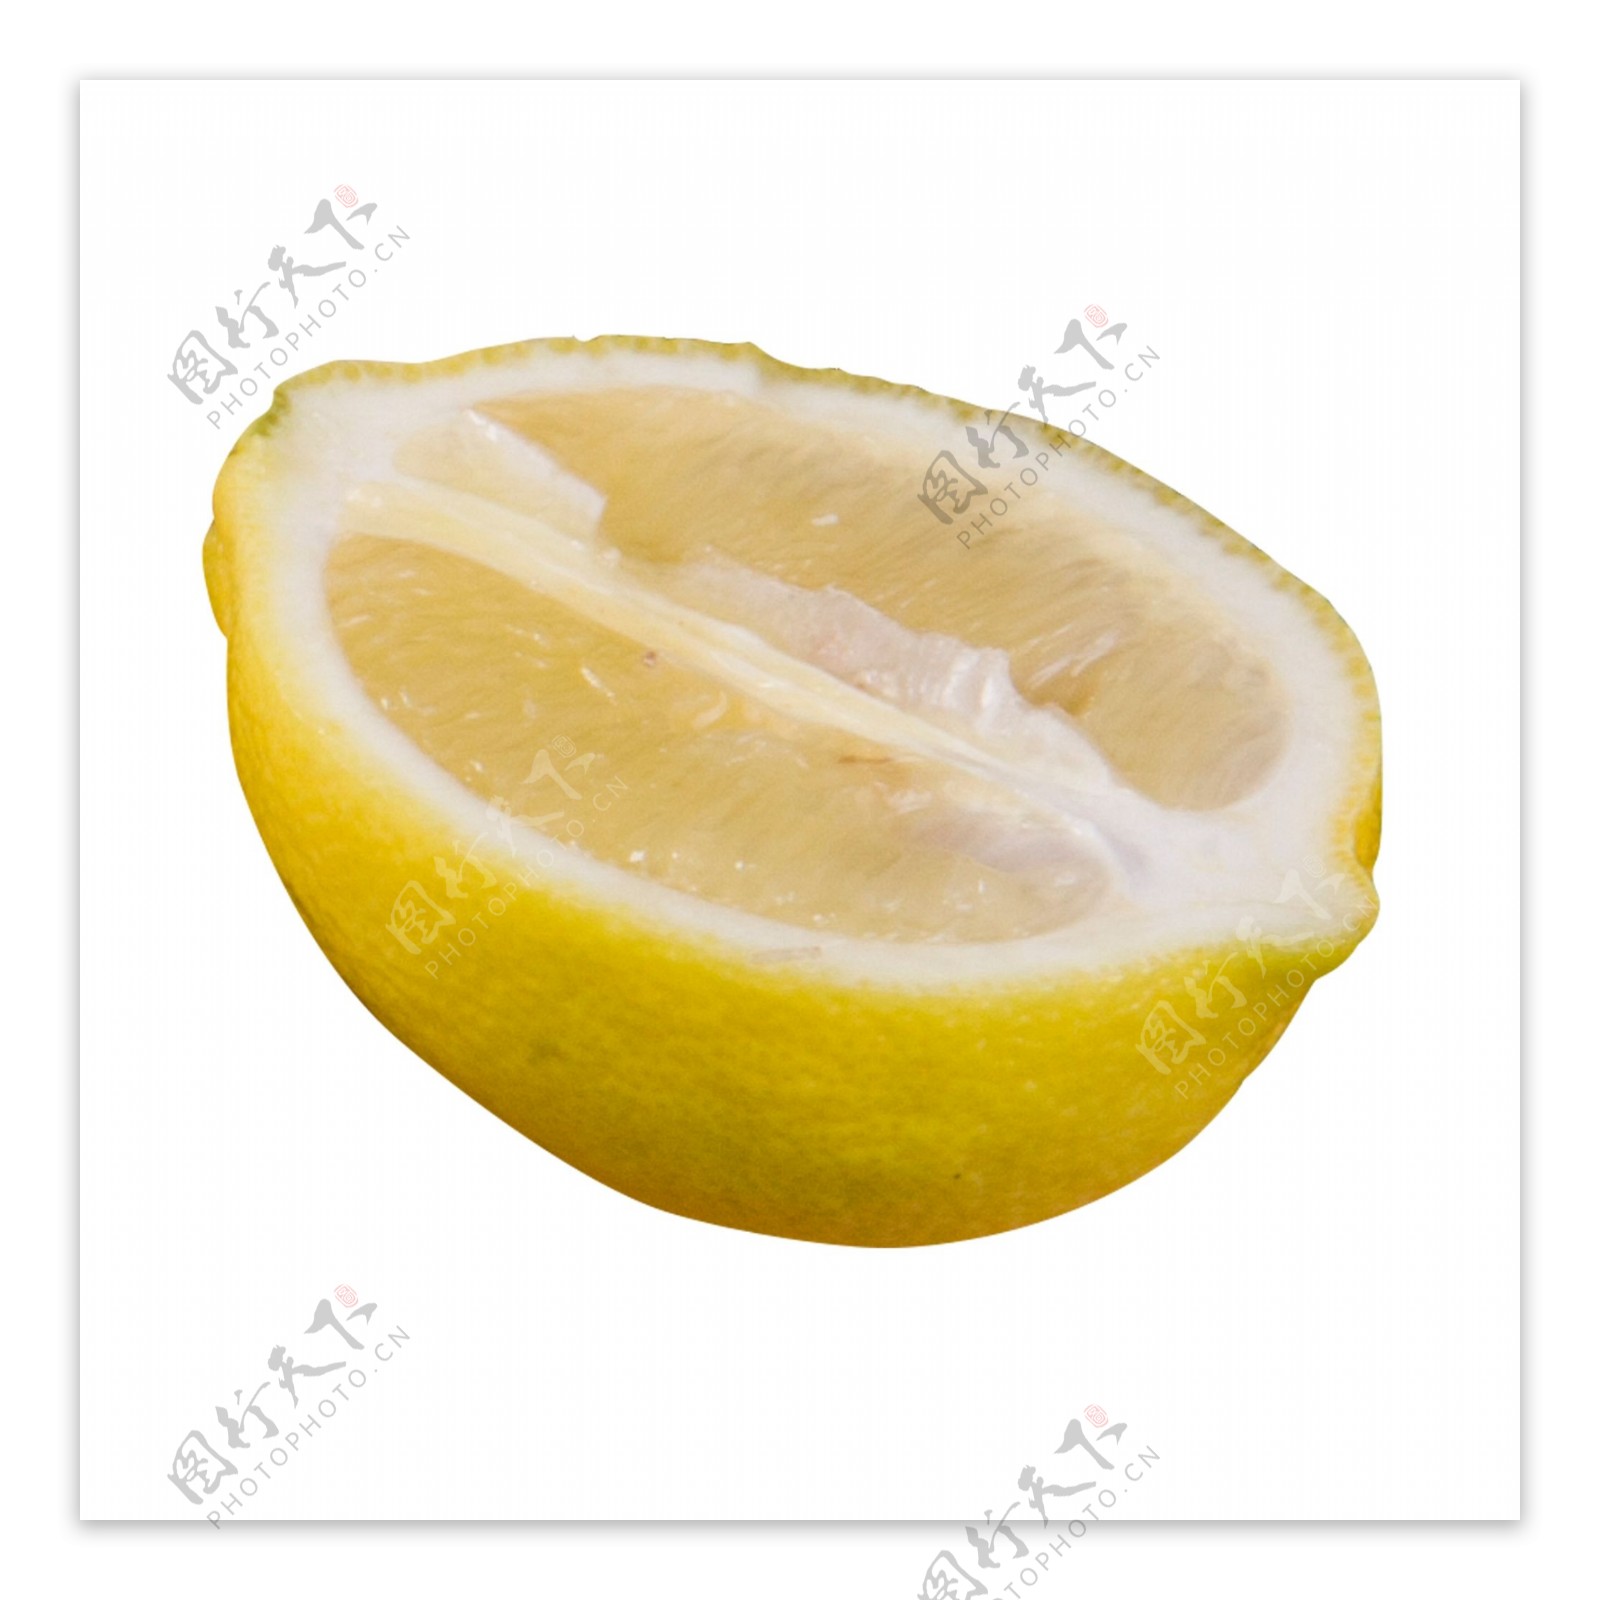 黄色圆弧柠檬食物元素